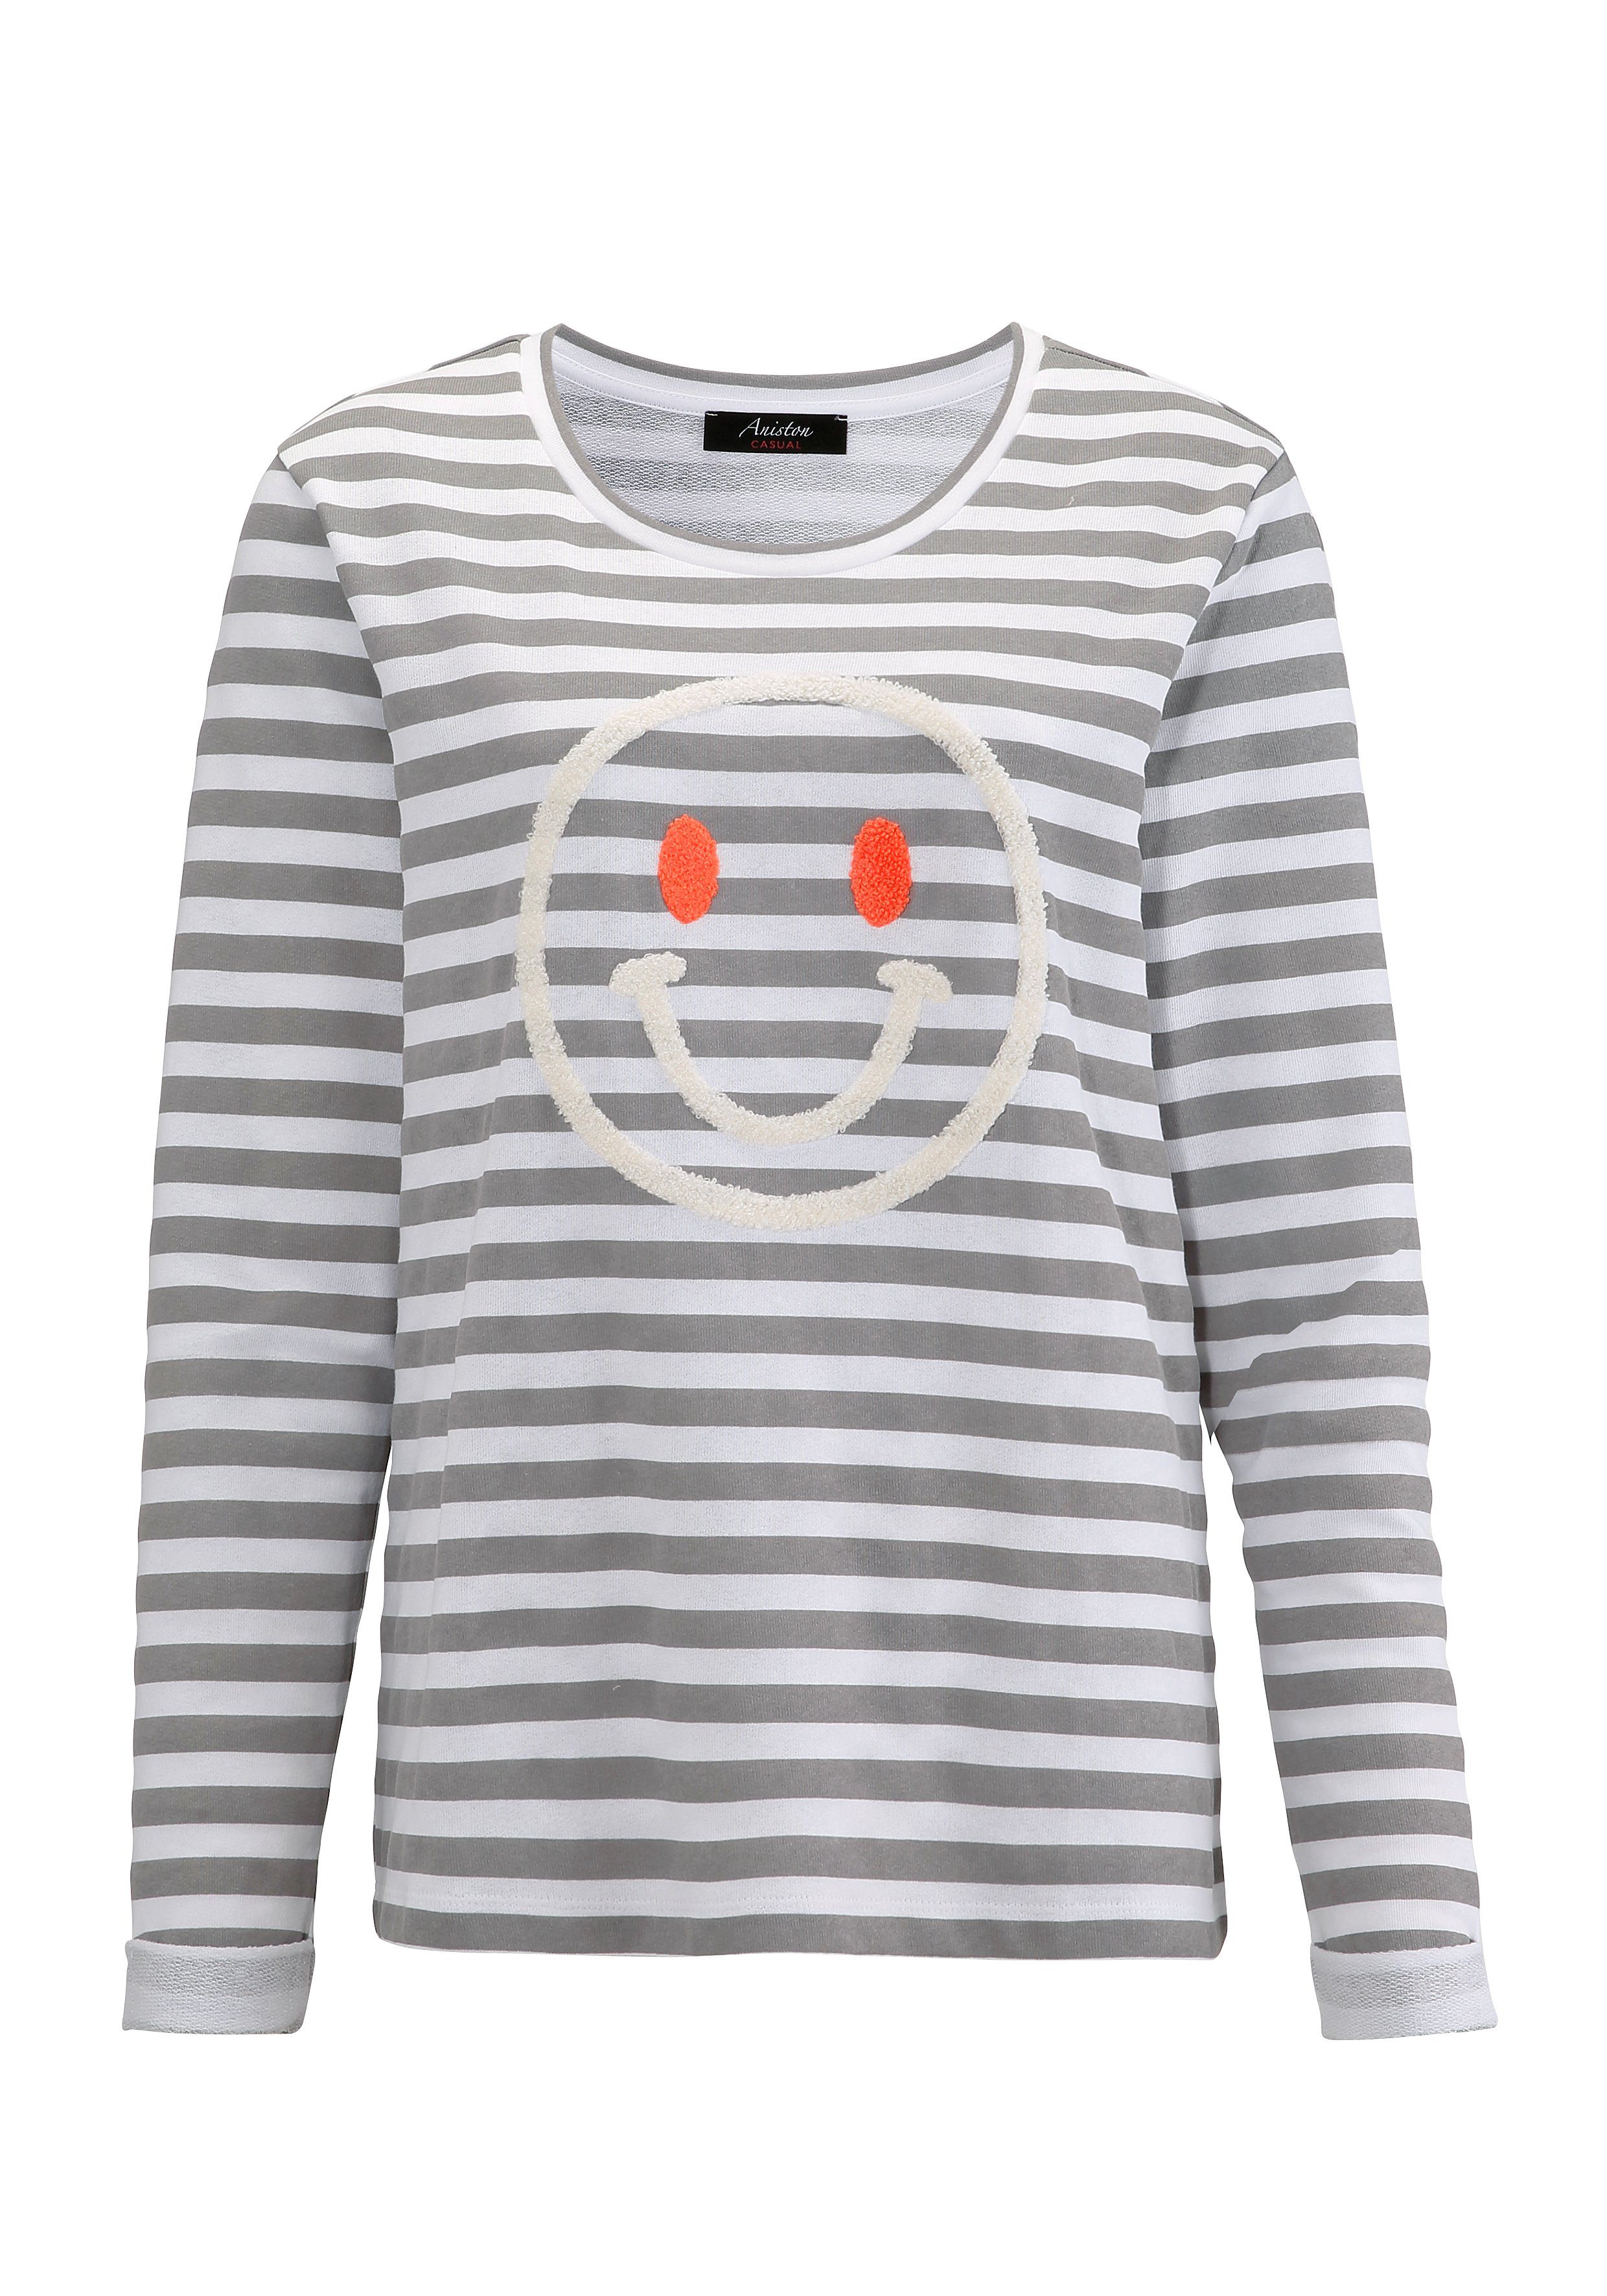 CASUAL Sweatshirt Aniston hellgrau-weiß-wollweiß-orange fröhlicher Smiley-Applikation mit